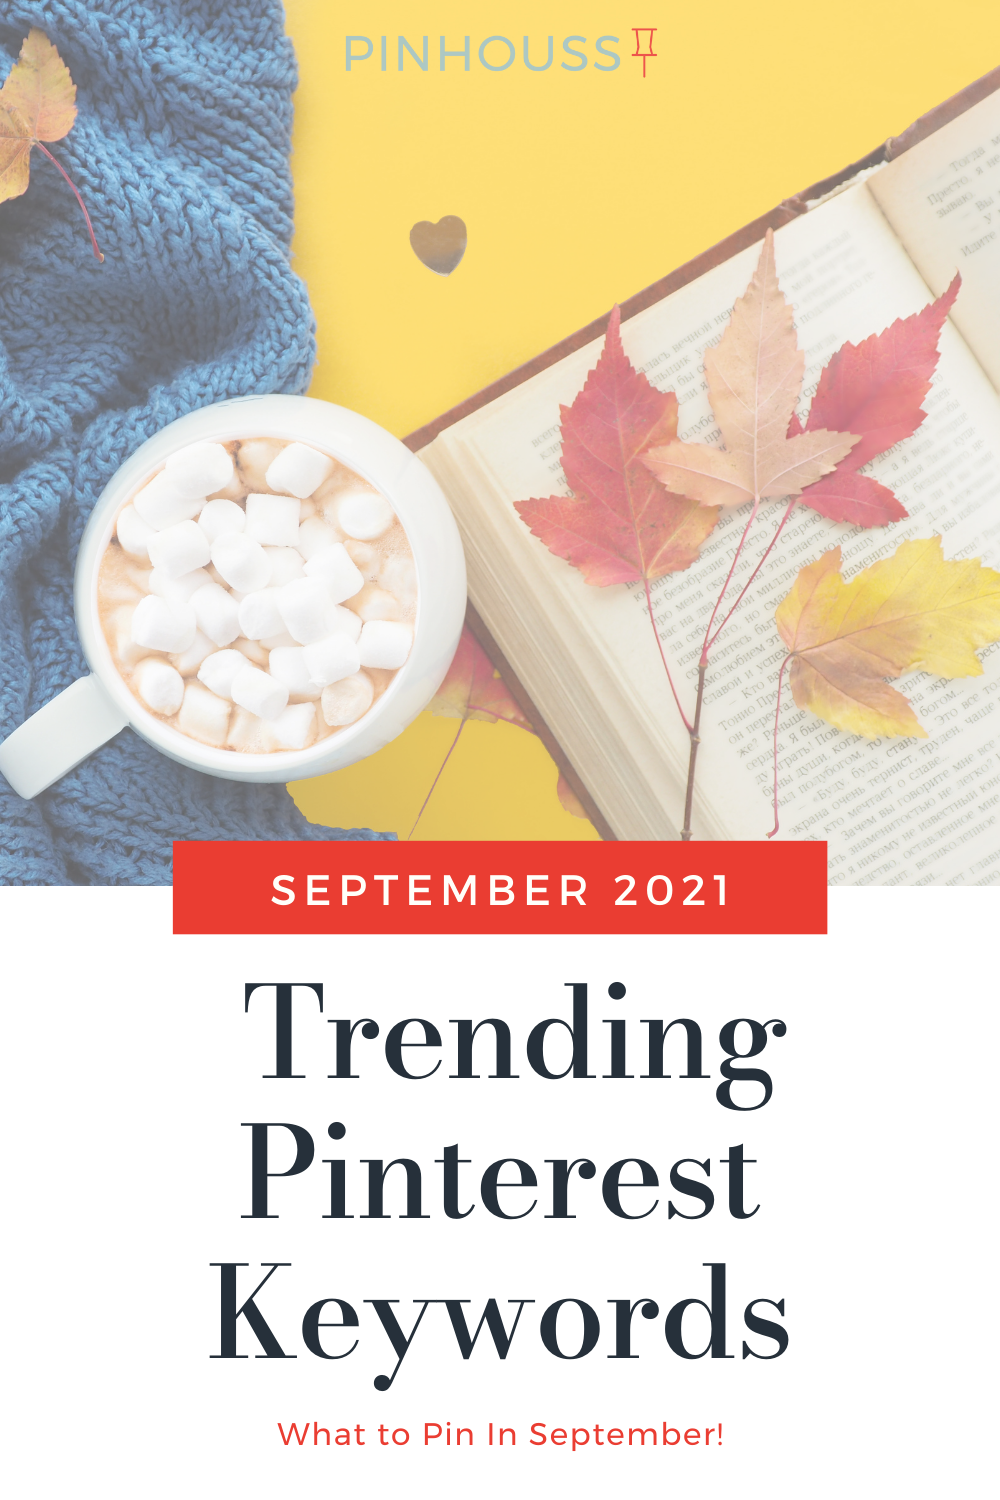 Pinterest Marketing Keywords September 2021